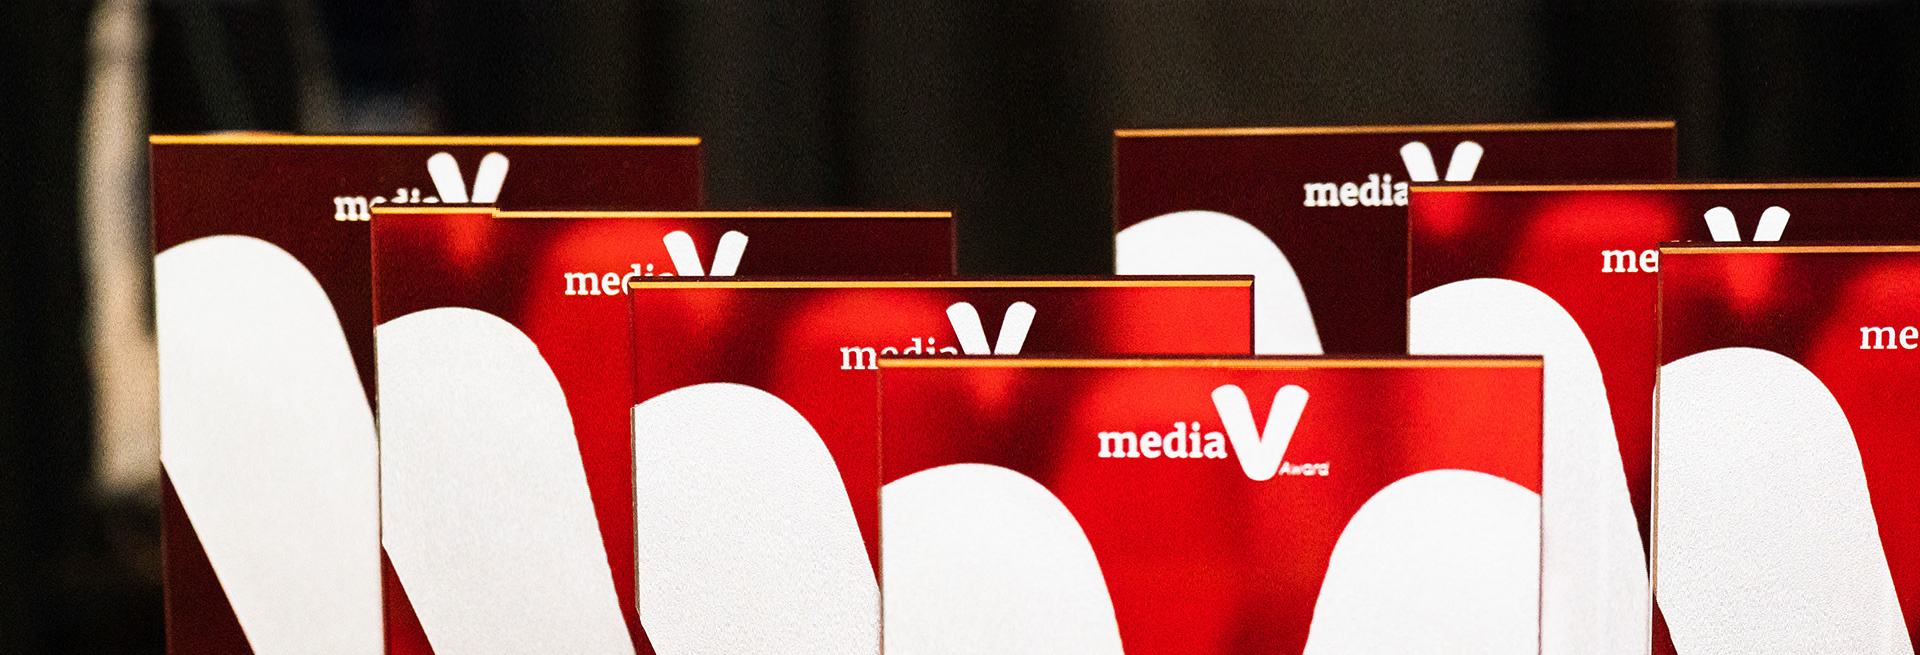 Dossier - VDWF Managing Director Ralf Dürrwächter receives special «Association Communicator of the Year» award at the 2021 mediaV Awards ceremony